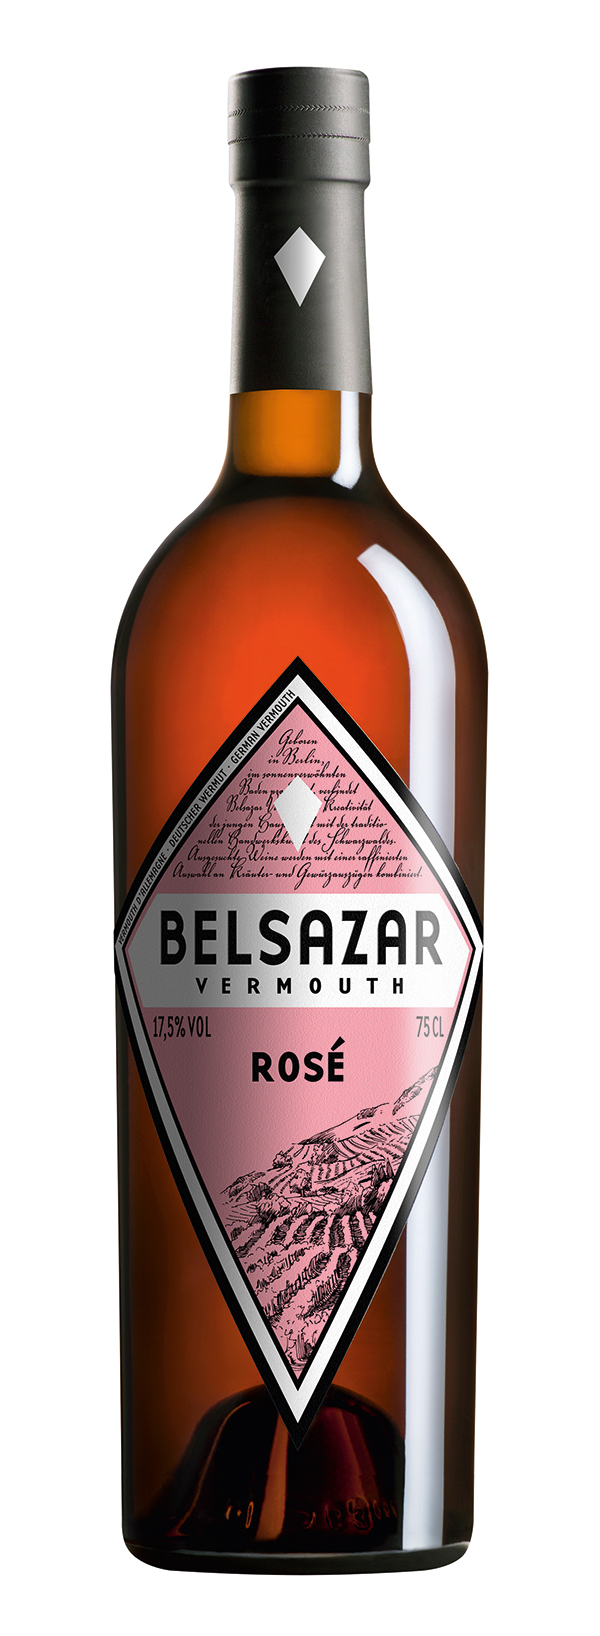 Belsazar Rose Vemouth 17,5% 0,75L